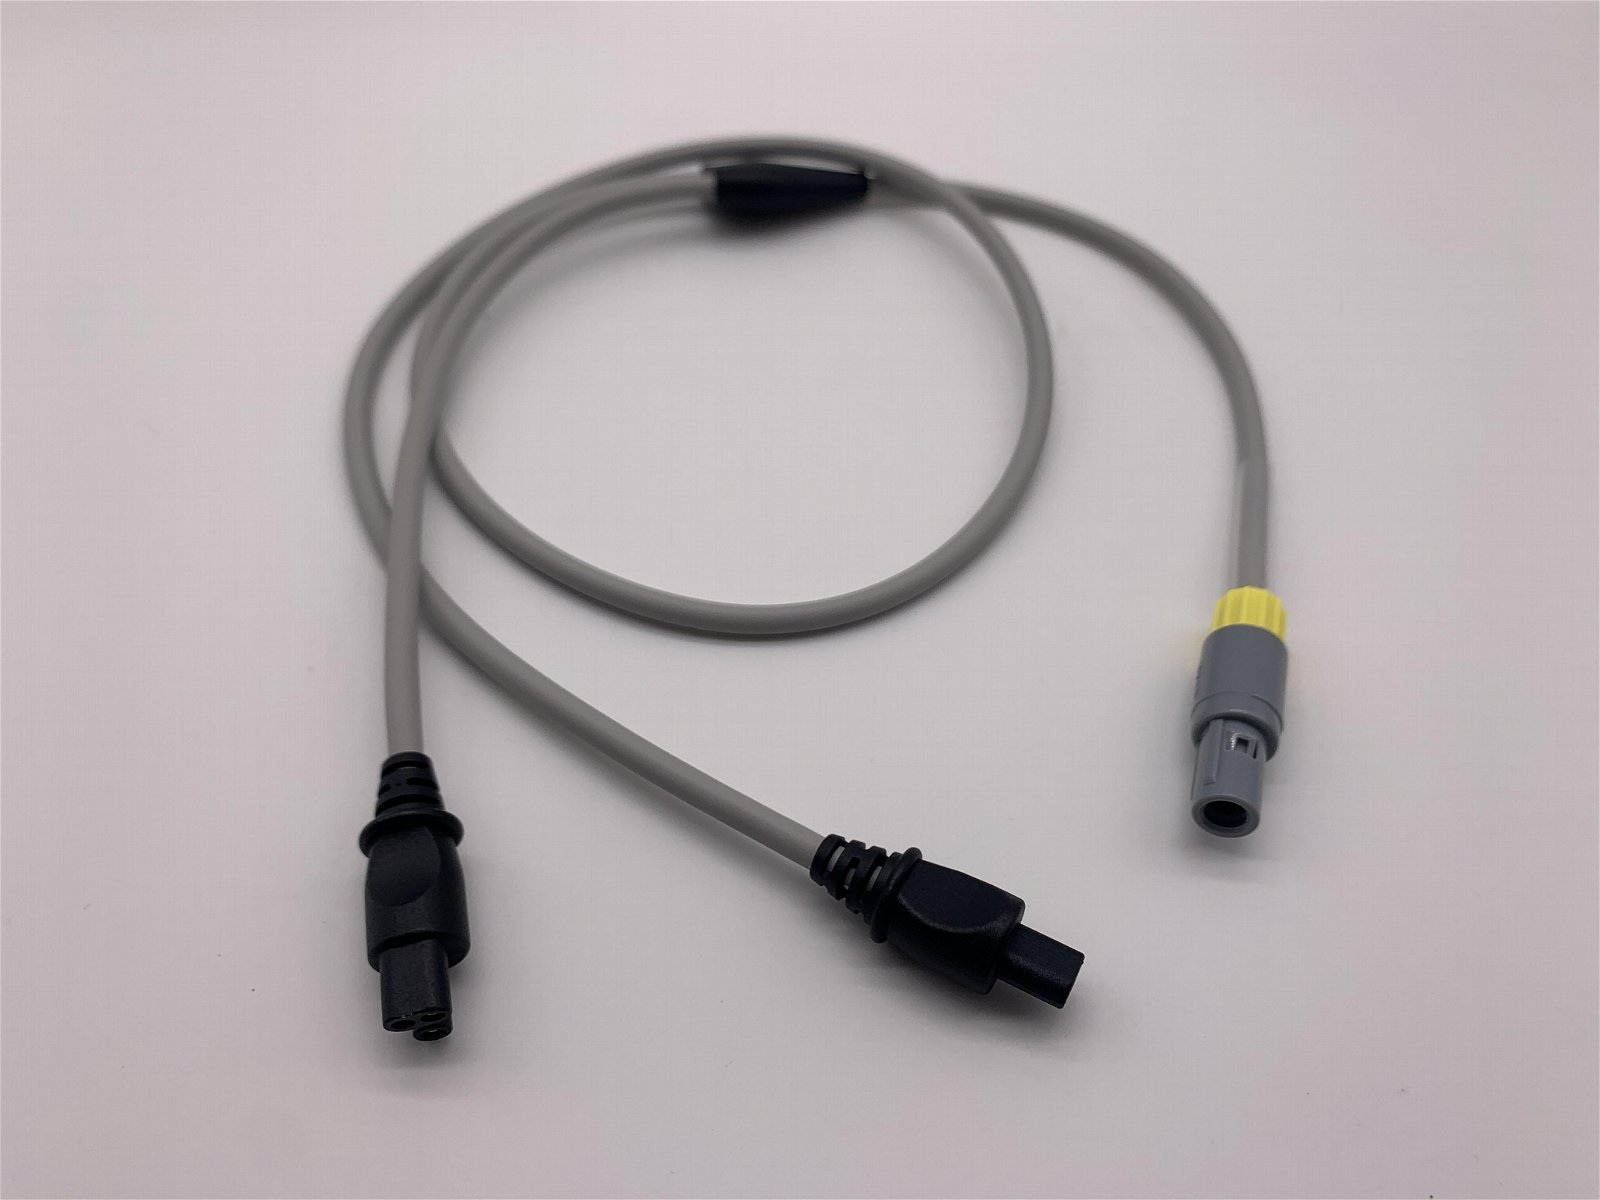 兼容費雪派克MR850濕化器管路雙加熱導絲轉接線溫度探頭連接線 2